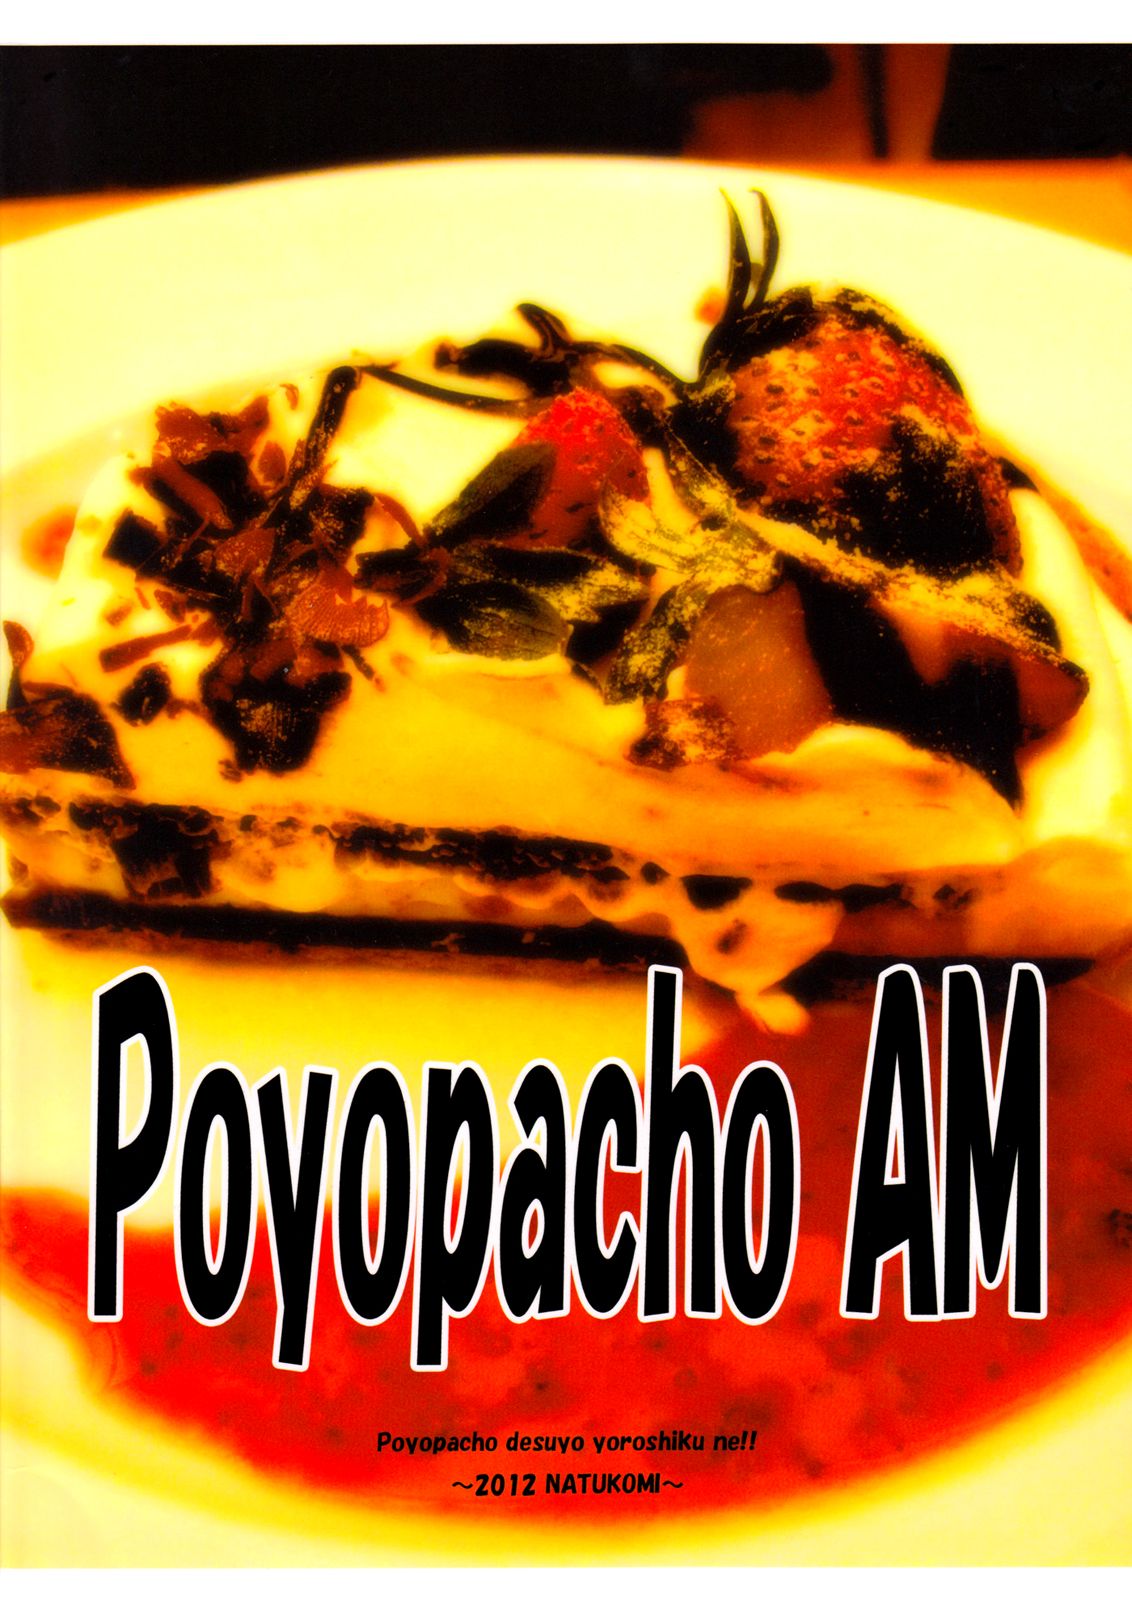 POYOPACHO AM - 20